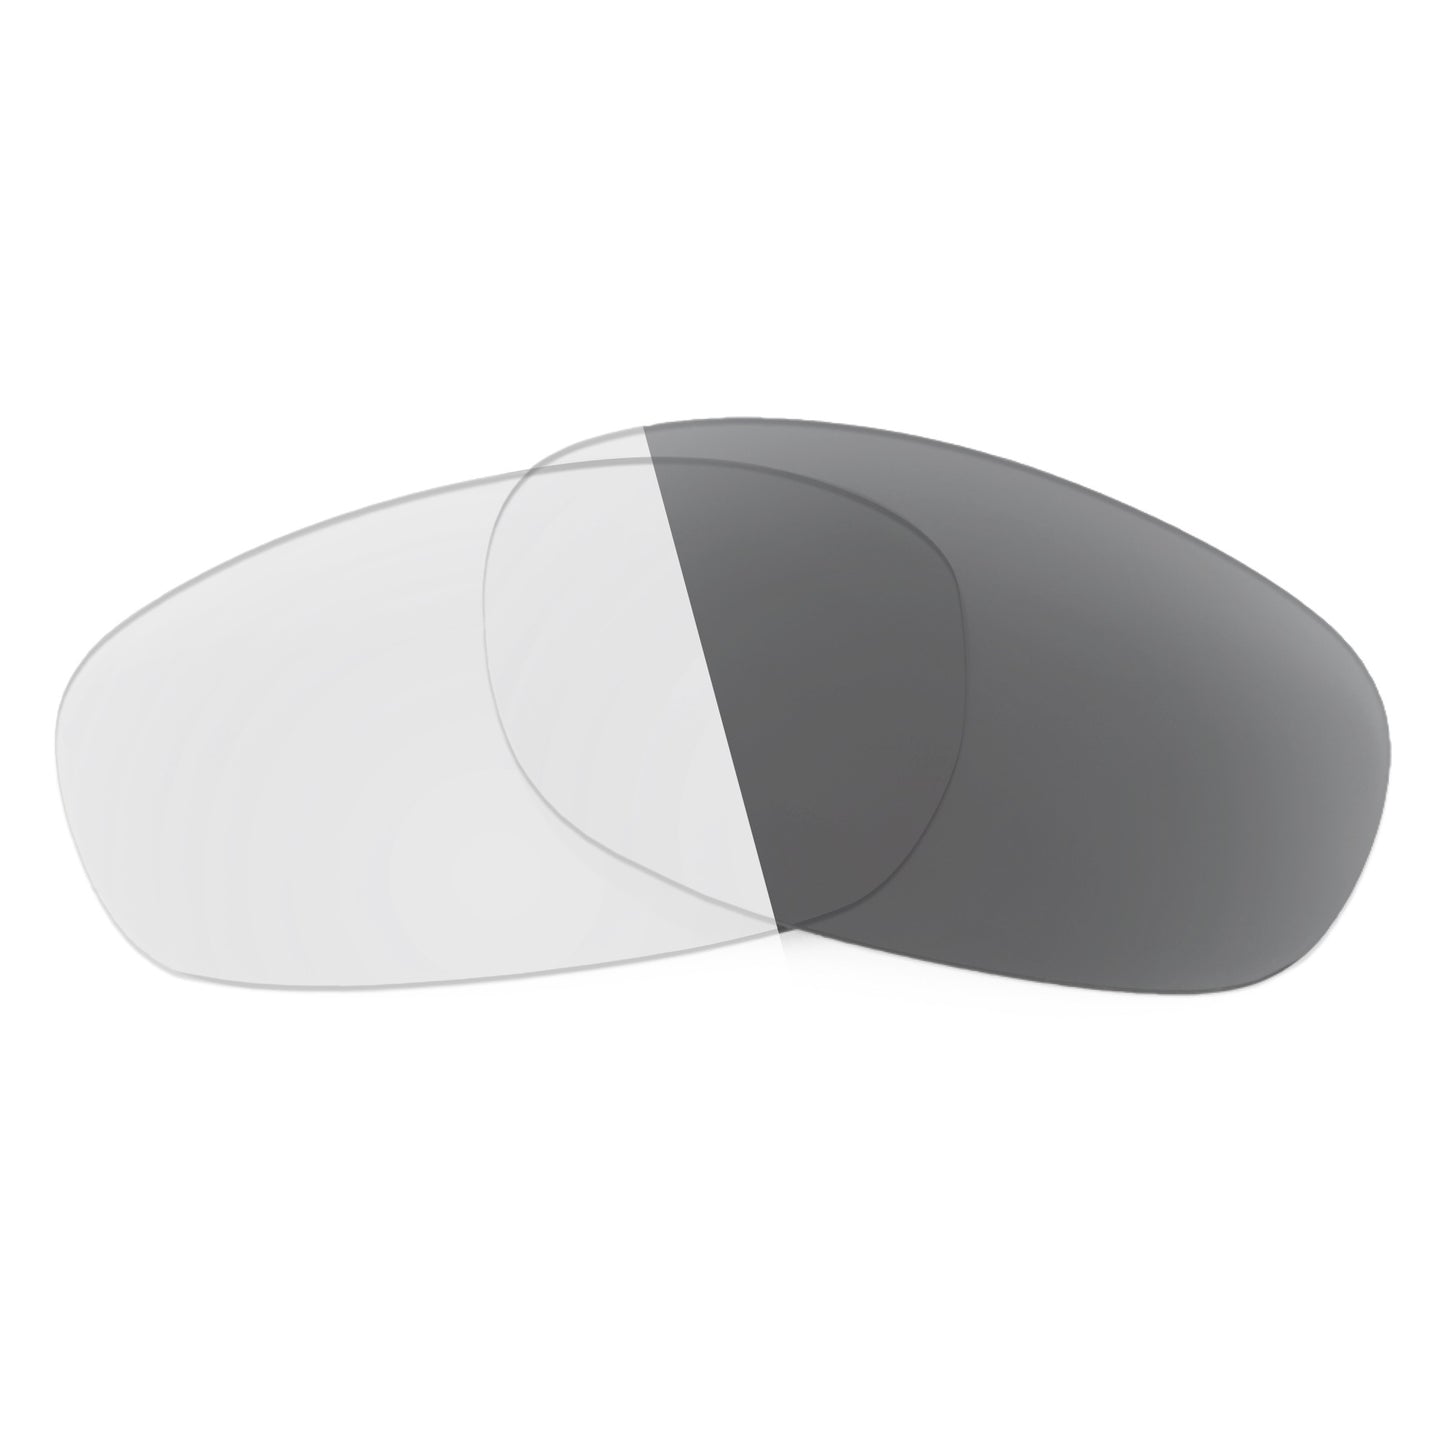 Revant replacement lenses for Costa Luke Non-Polarized Adapt Gray Photochromic